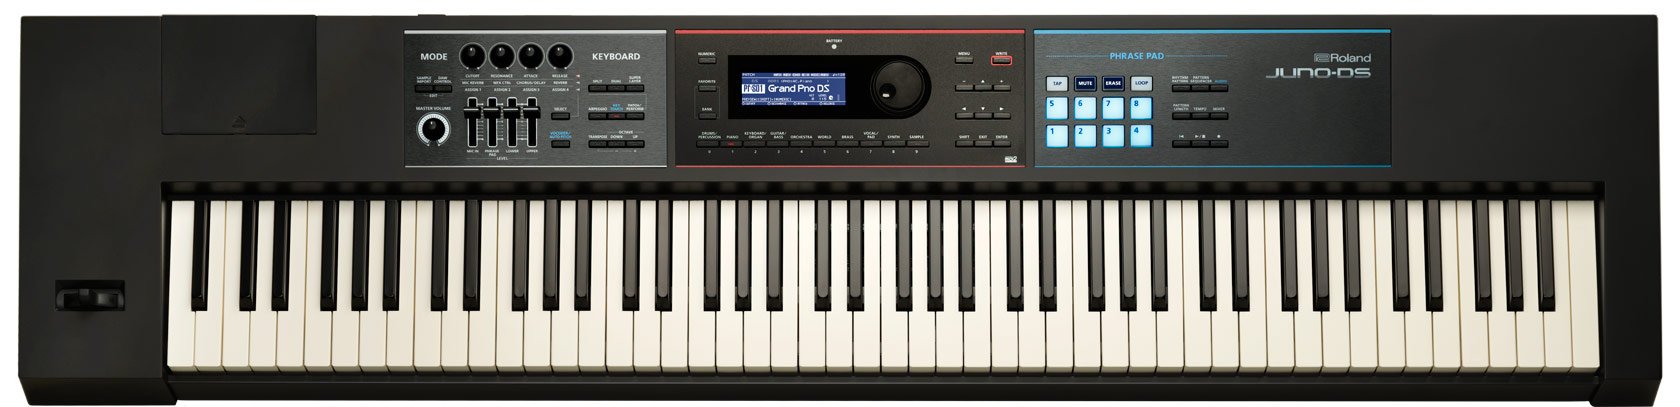 Roland  لوحة مفاتيح JUNO-DS 88-Key خفيفة الوزن مع تأثير...